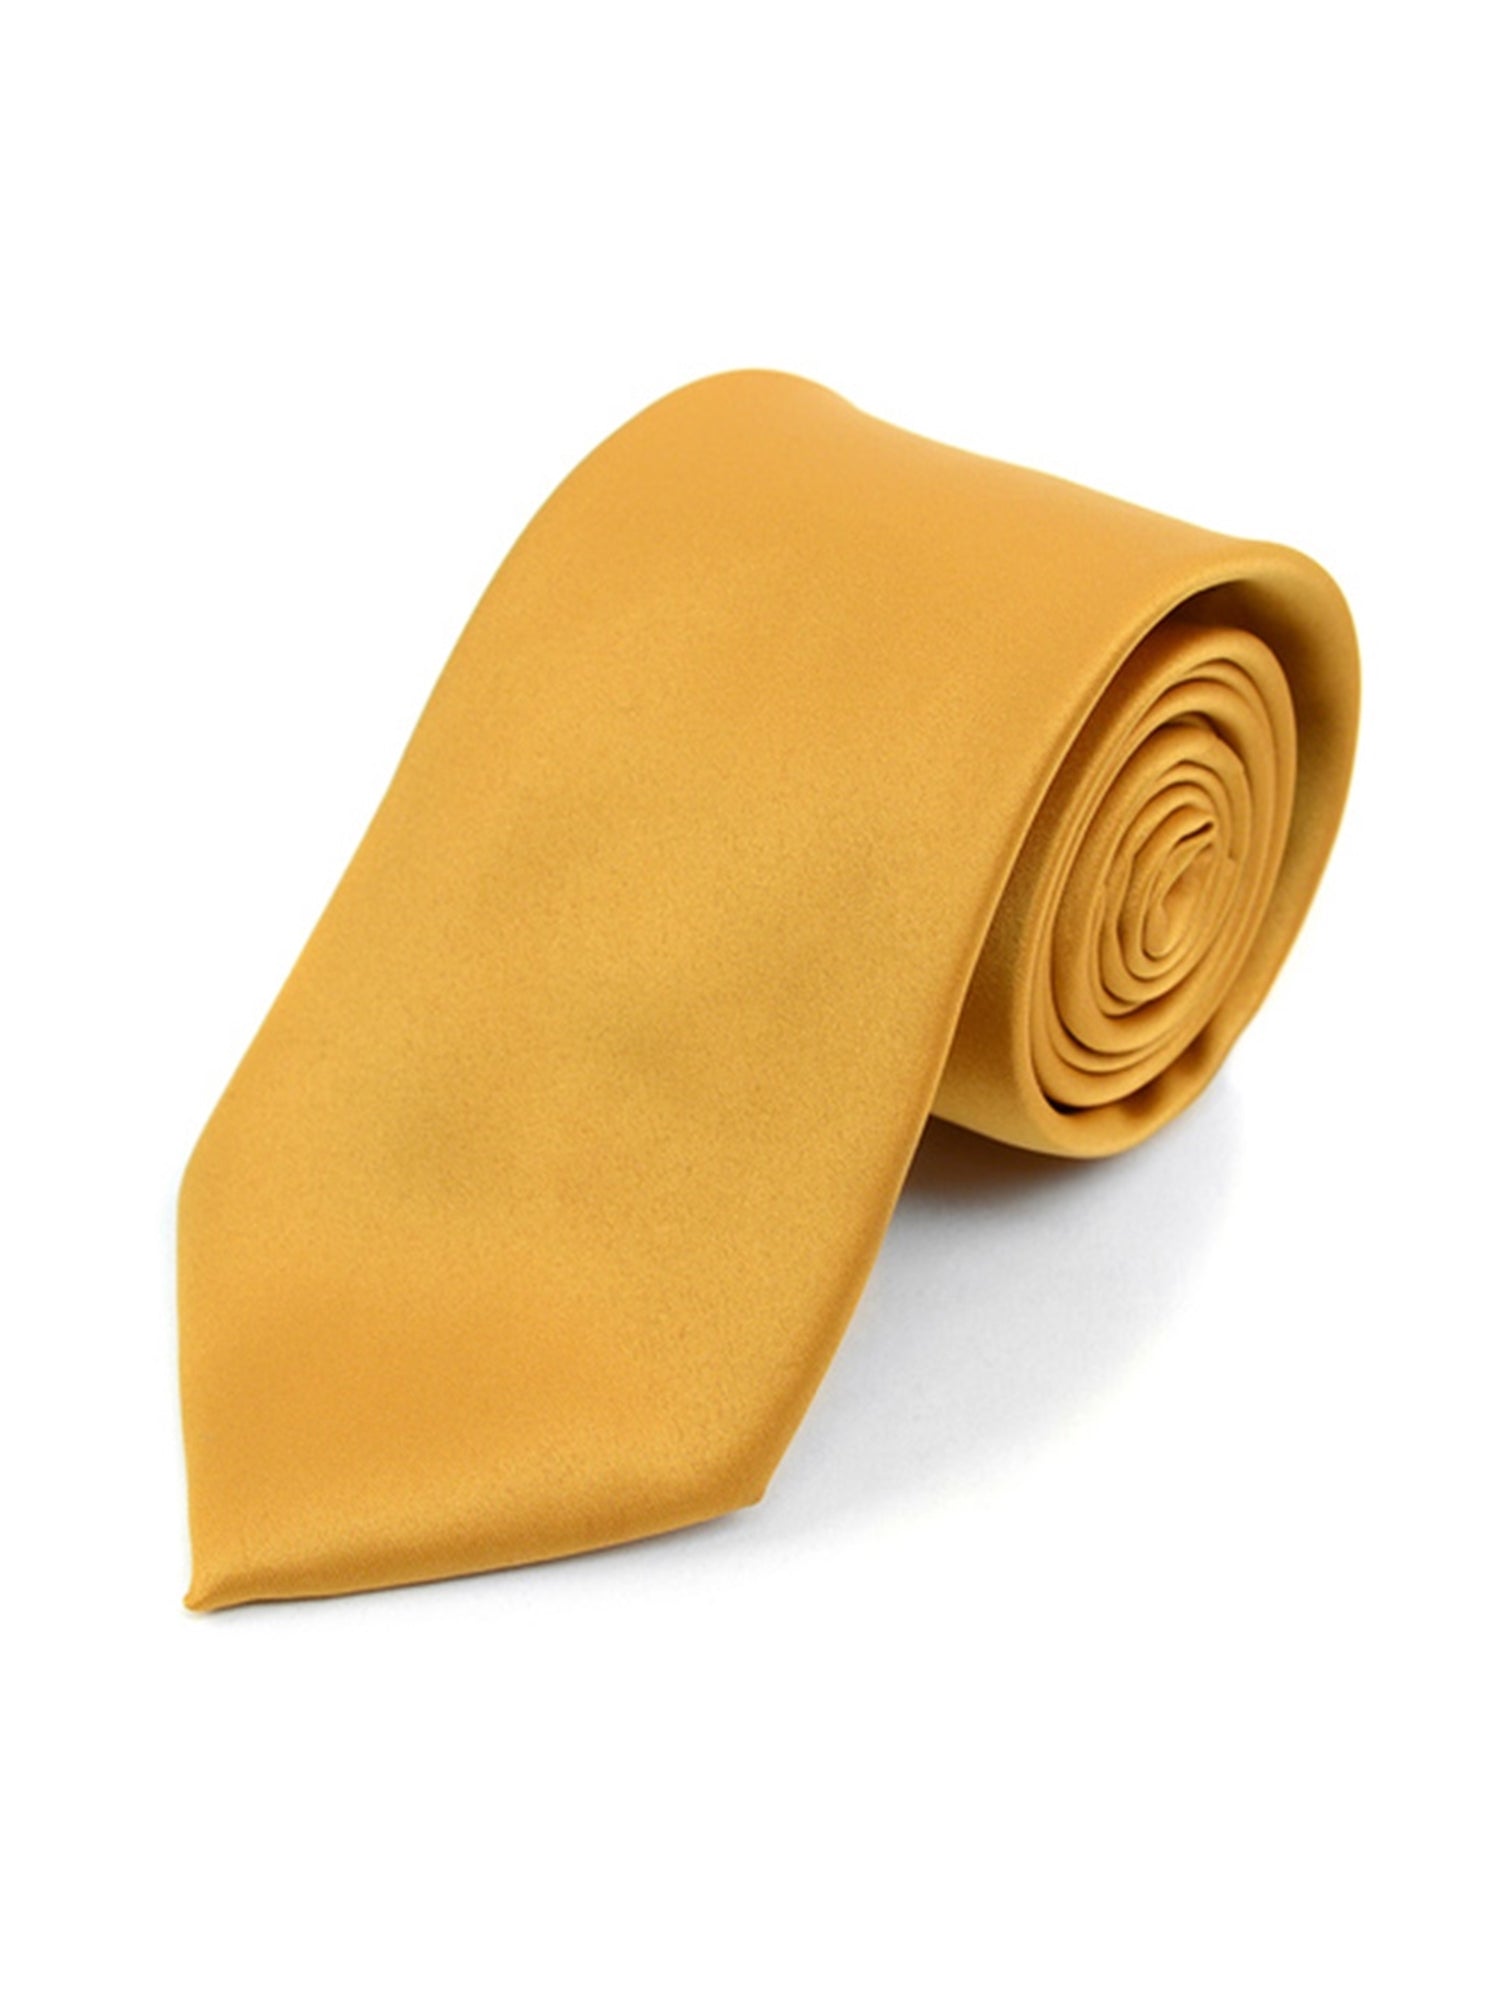 Boy's Age 12-18 Solid Color Poly Neck Tie Boy's Solid Color Neck Tie TheDapperTie Gold 49" 